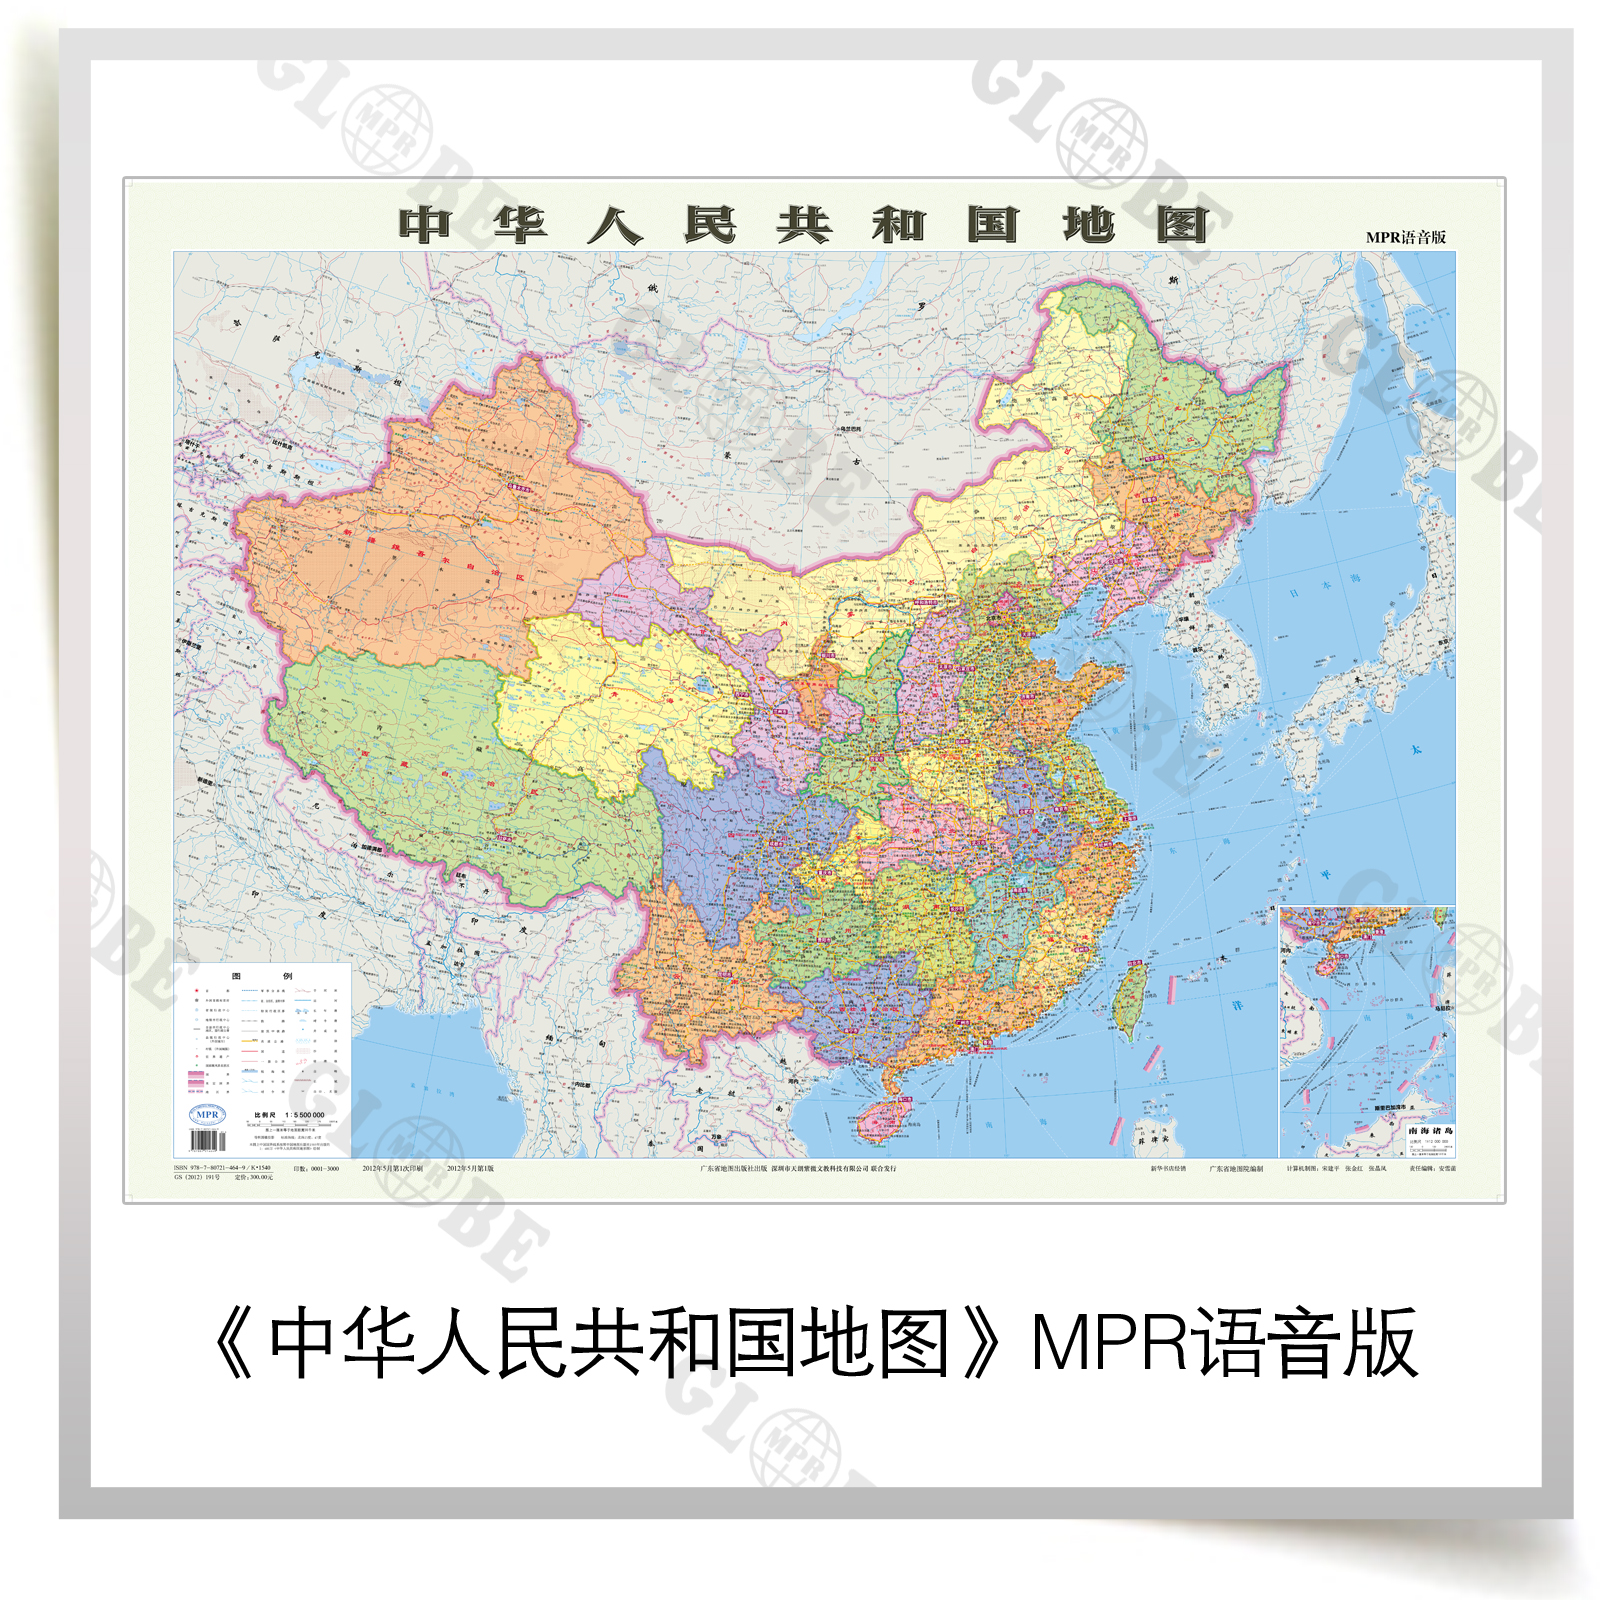 語音地圖|MPR智慧型語音地圖|有聲中國地圖